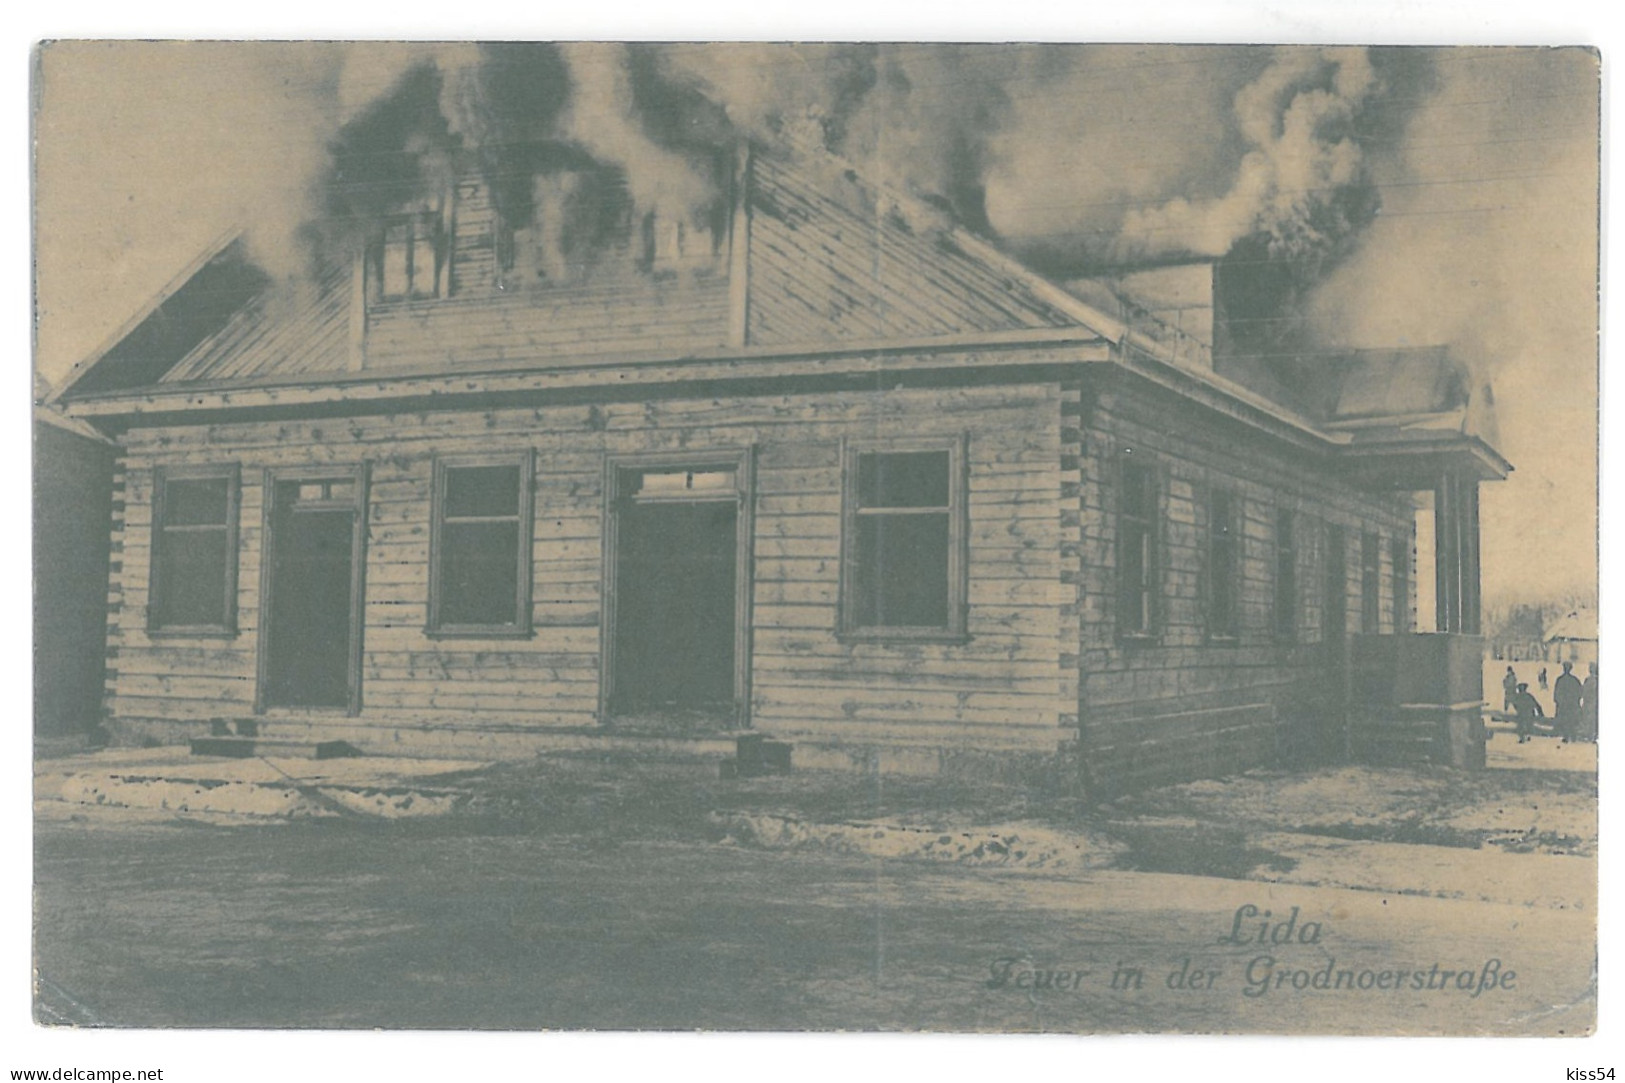 BL 32 - 14637 LIDA, House In Fire, Belarus - Old Postcard, CENSOR - Used - 1916 - Wit-Rusland